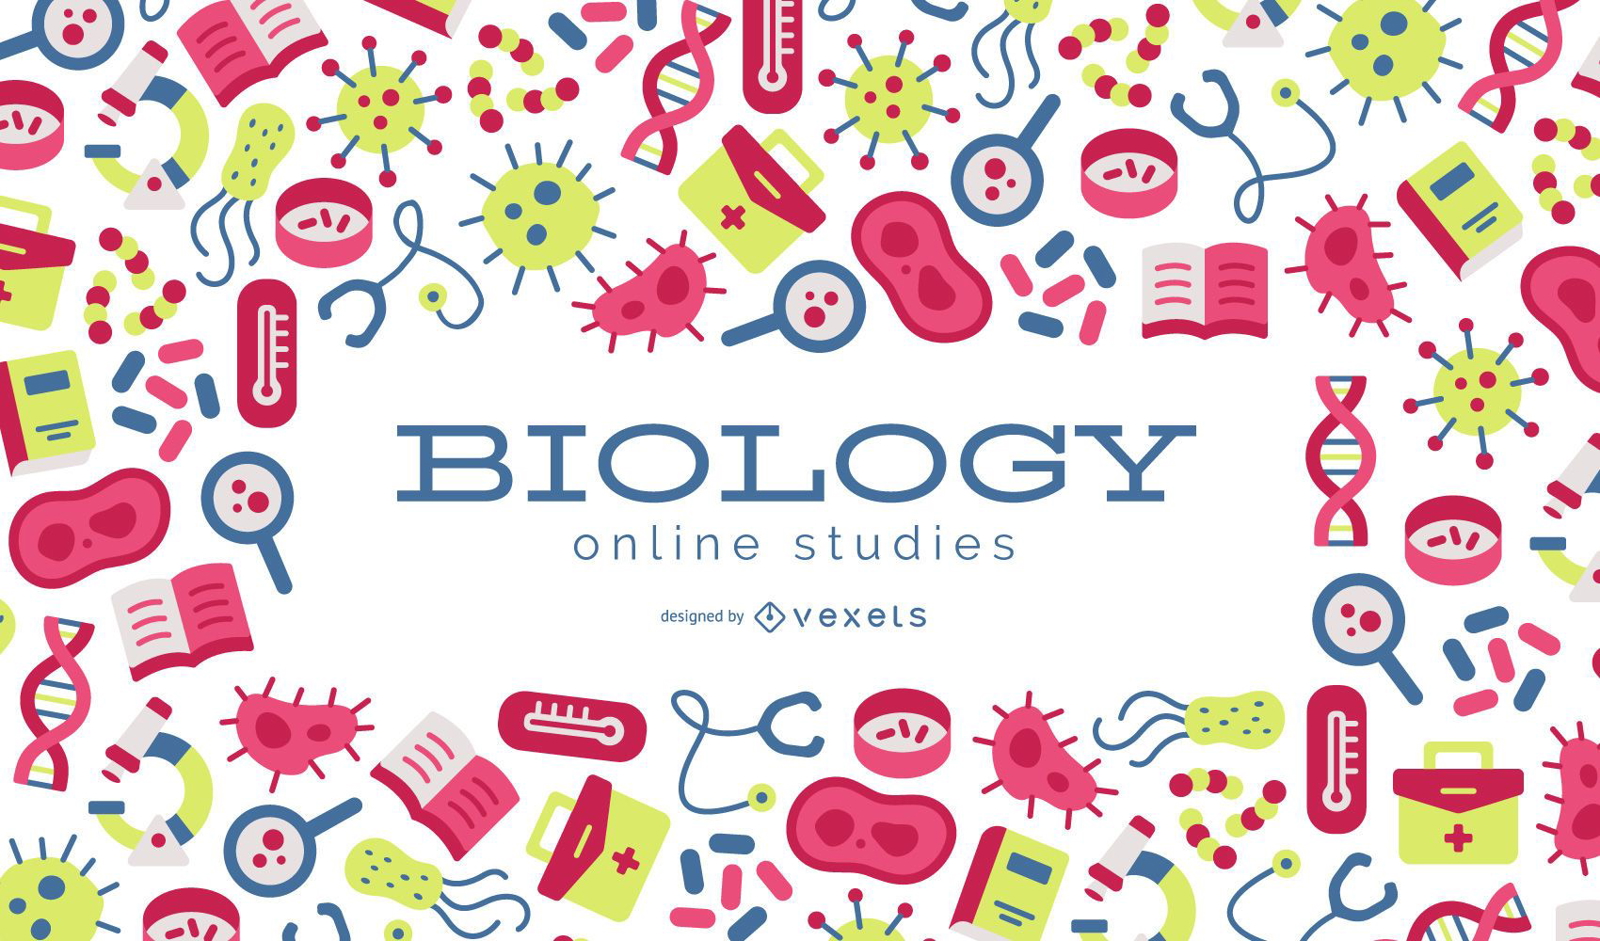 Diseño de fondo de estudios en línea de biología